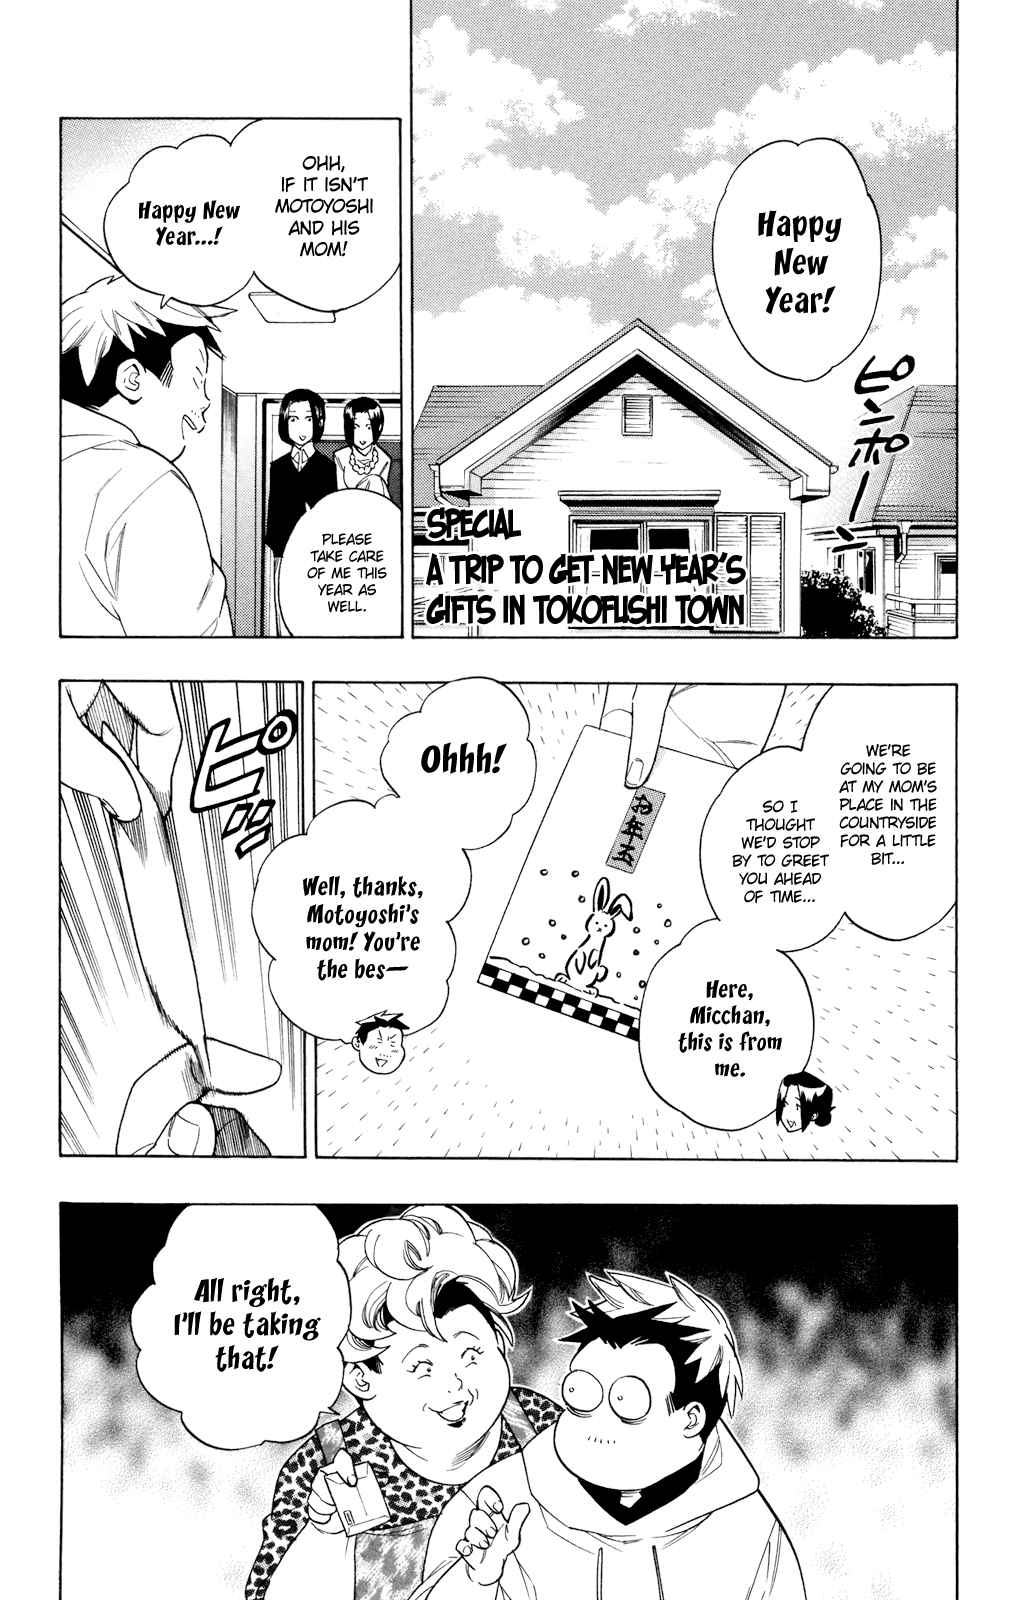 Hokenshitsu no Shinigami Vol. 9 Ch. 78.5 A Trip To Get New Year's Gifts In Tokofushi Town